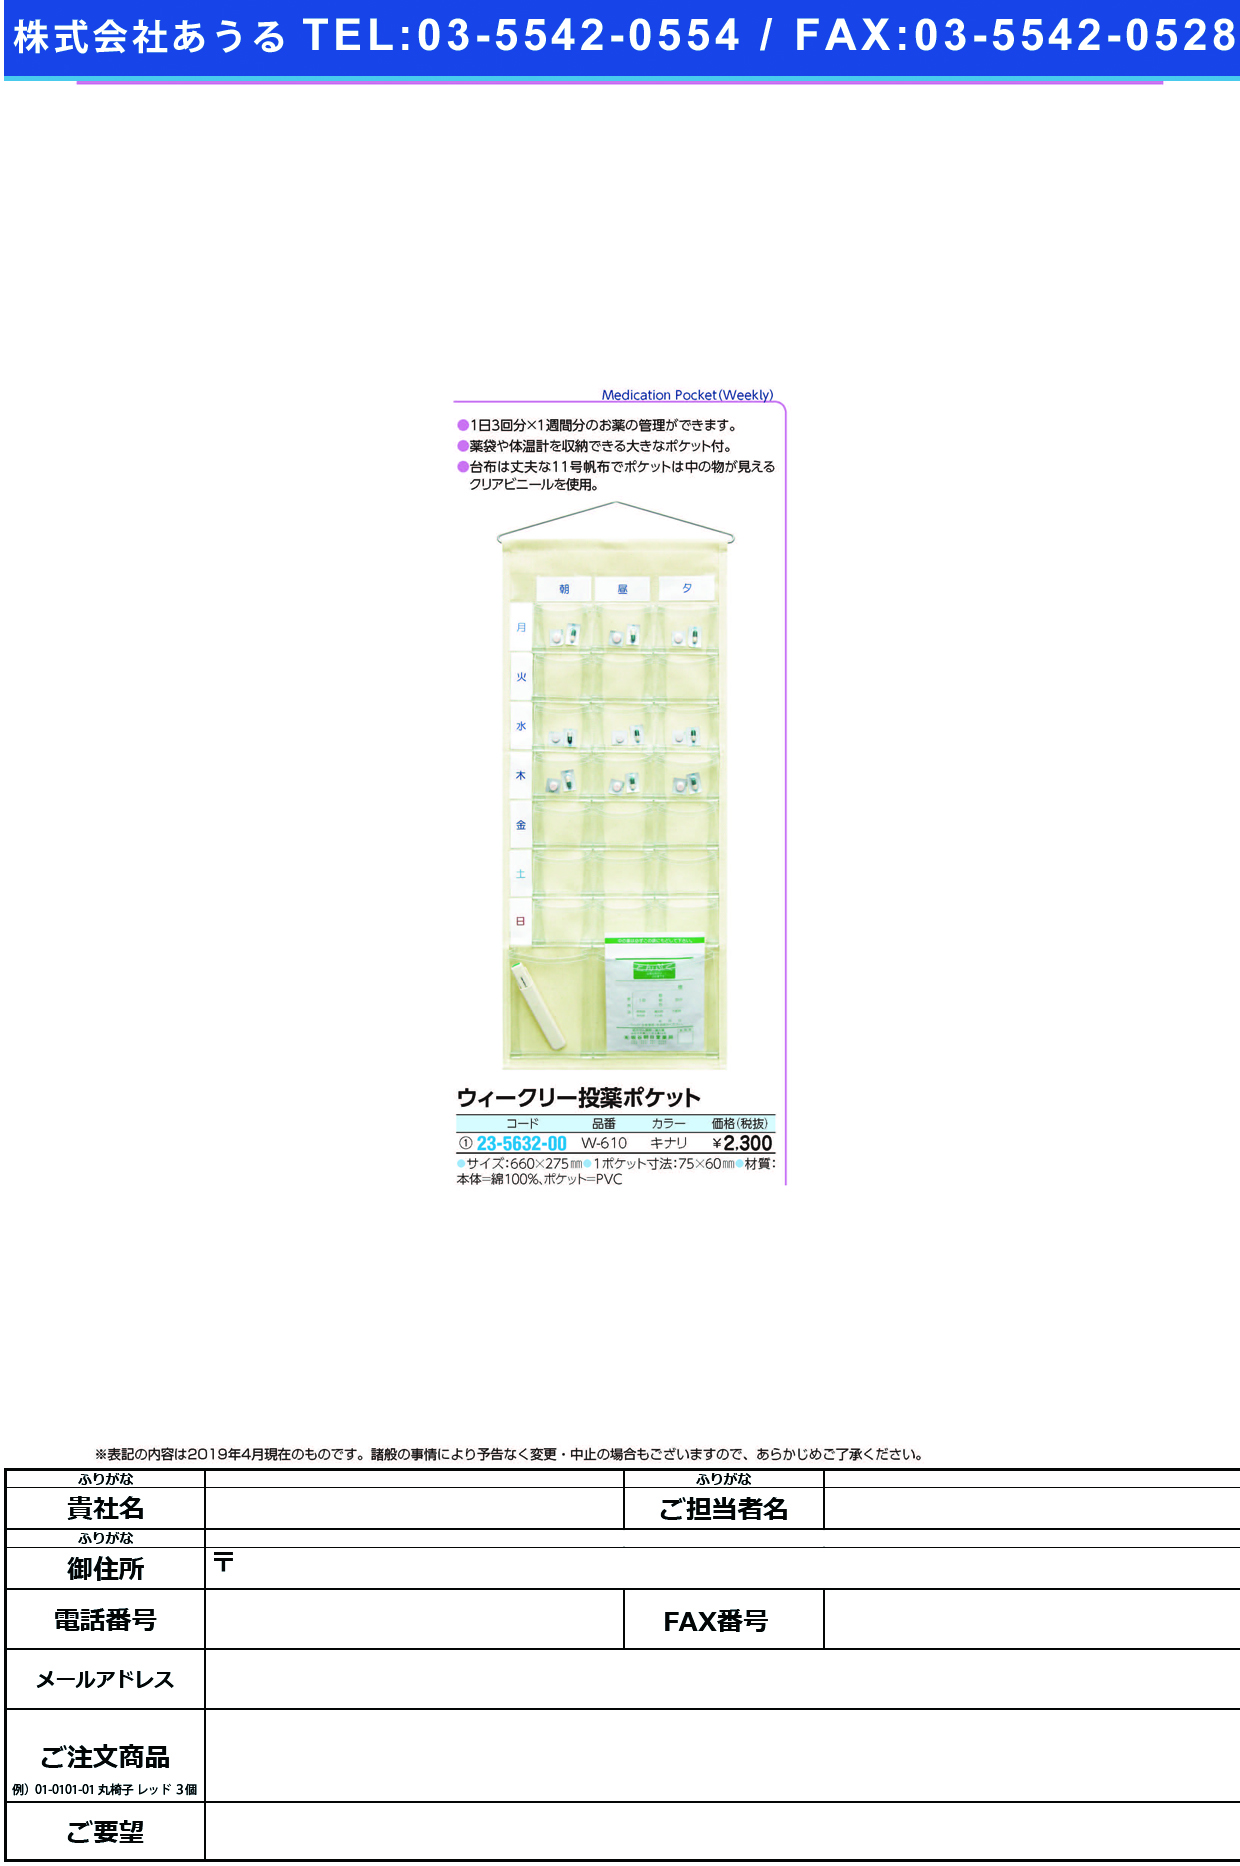 (23-5632-00)ウィークリー投薬ポケット W-610(ｷﾅﾘ) ｳｨｰｸﾘｰﾄｳﾔｸﾎﾟｹｯﾄ【1個単位】【2019年カタログ商品】